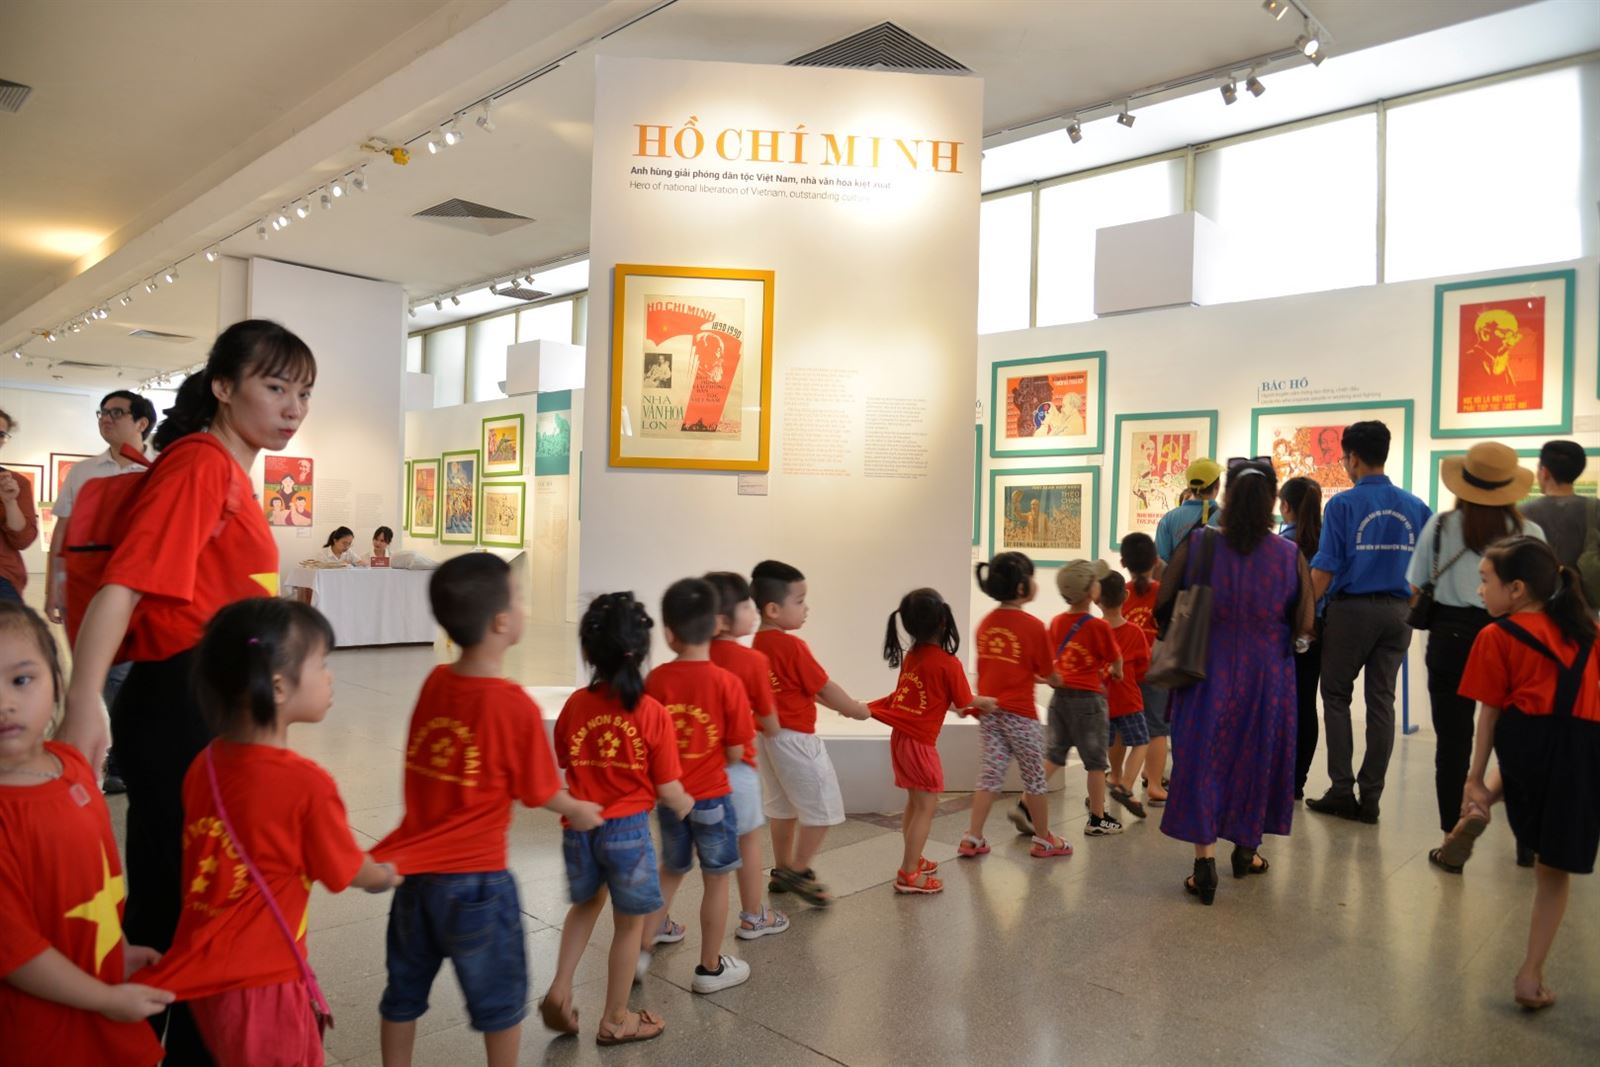  [Ảnh] Trưng bày “Chân dung Hồ Chí Minh – Góc nhìn từ tranh cổ động.1969 – 2011”